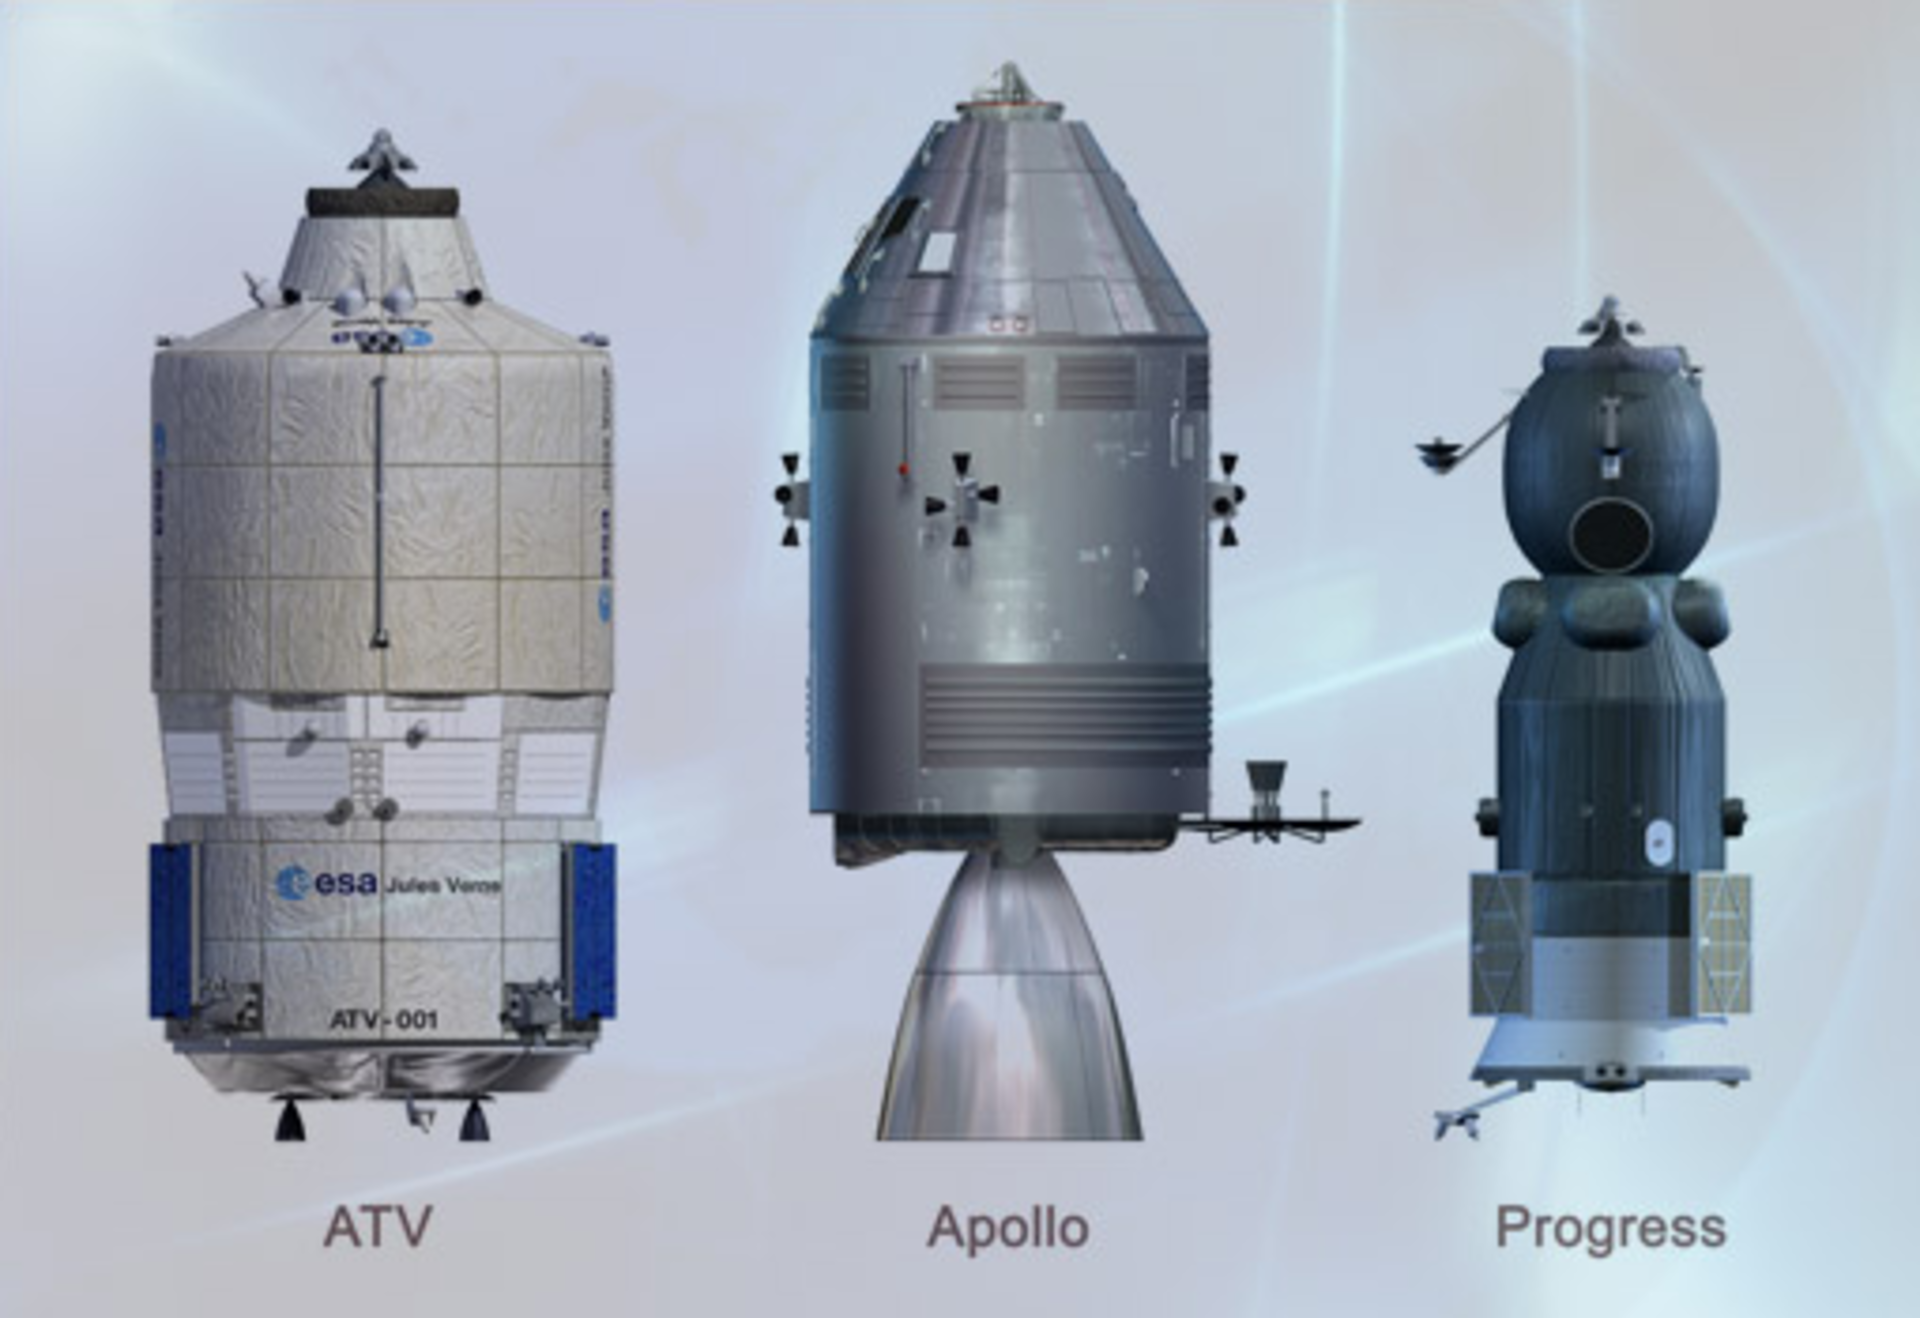 ATV, Apollo, Progress relative sizes